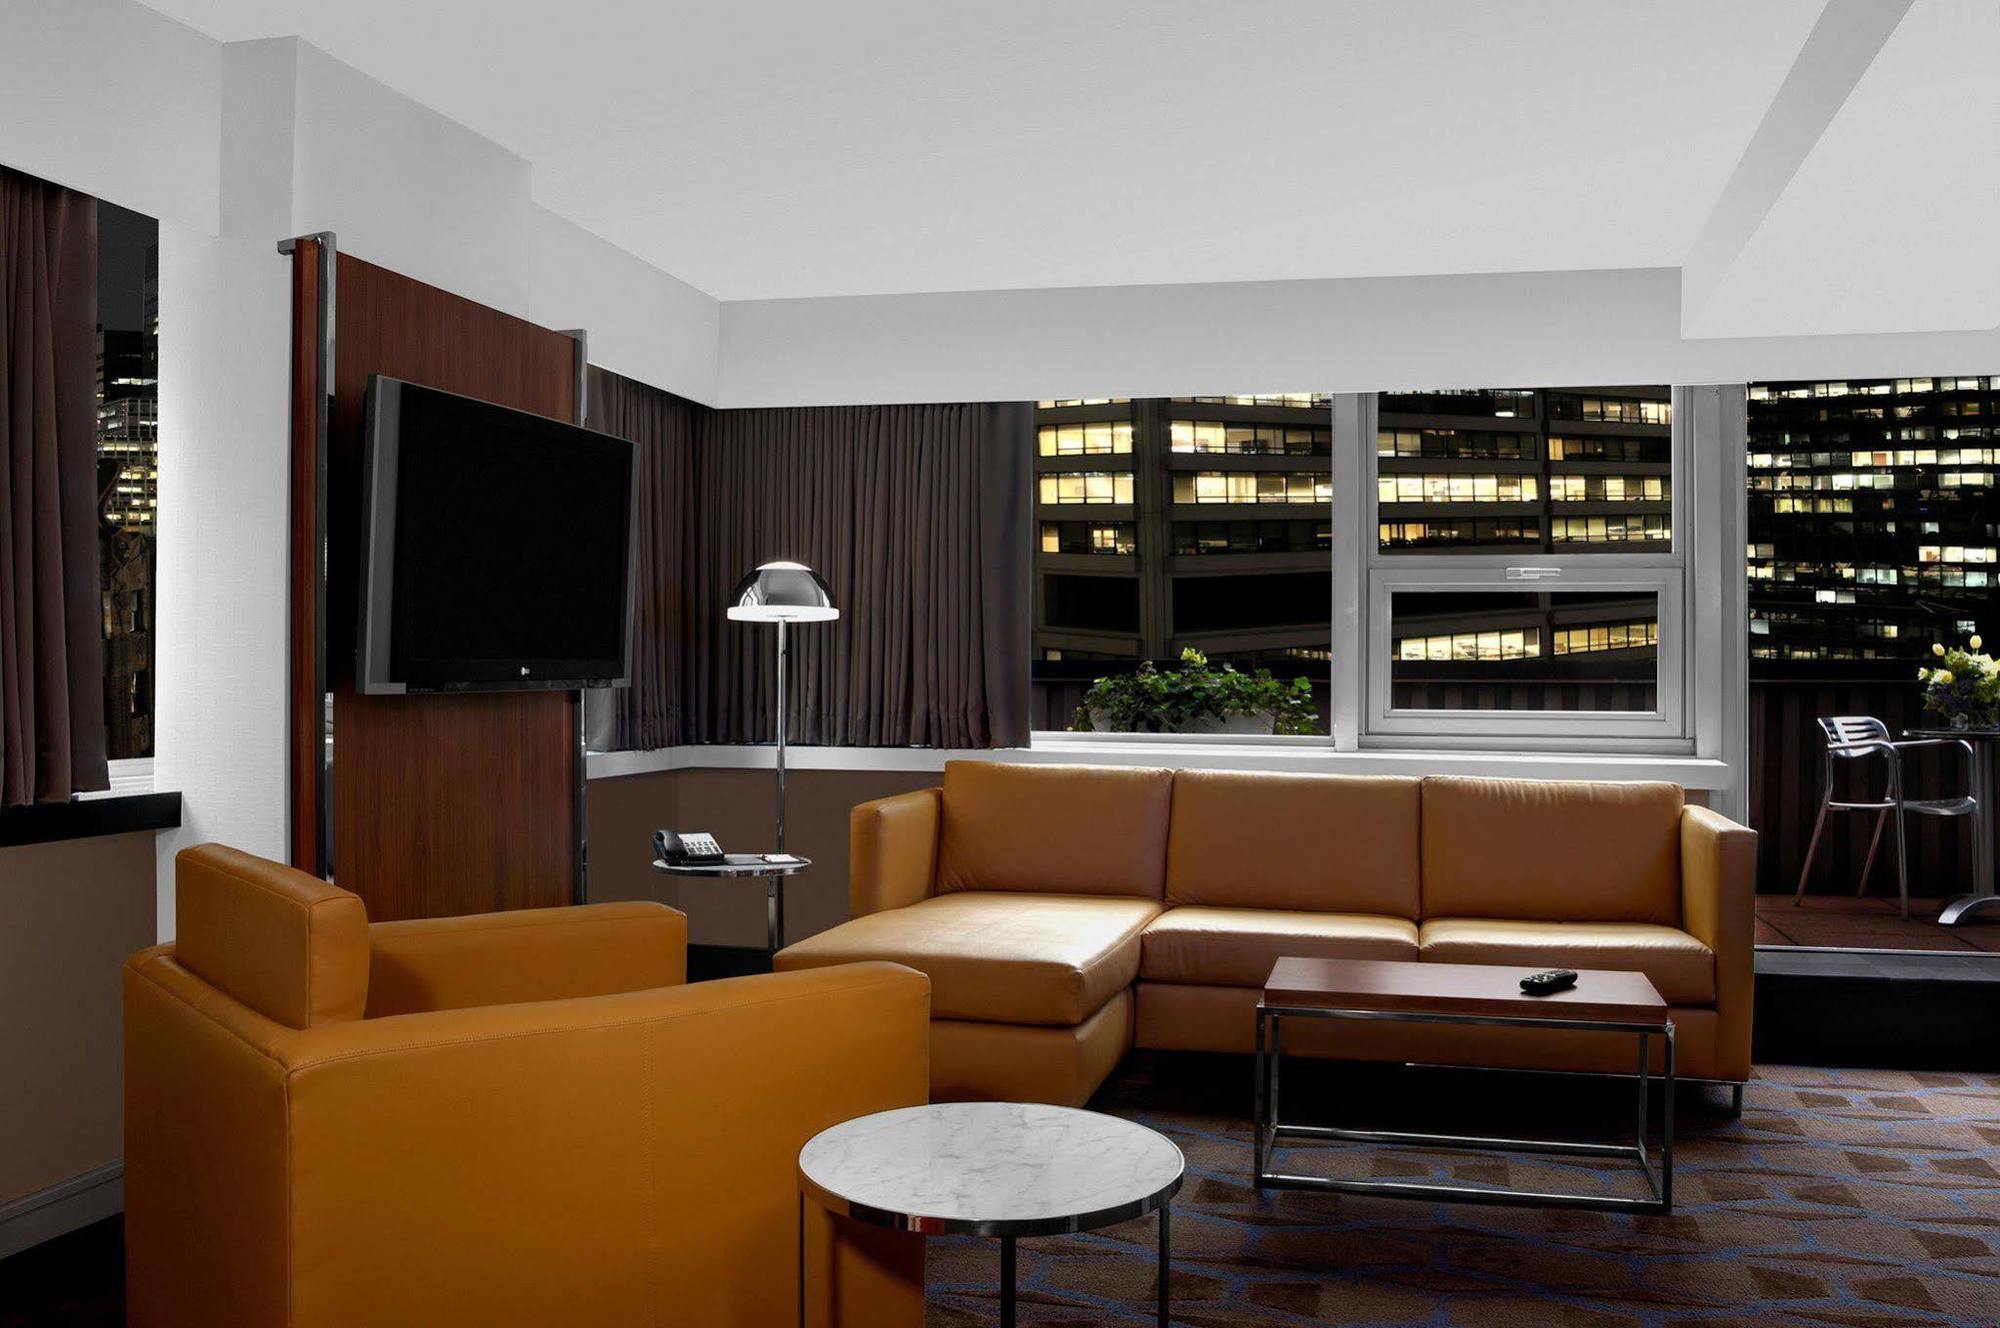 Doubletree By Hilton Metropolitan New York City Zewnętrze zdjęcie